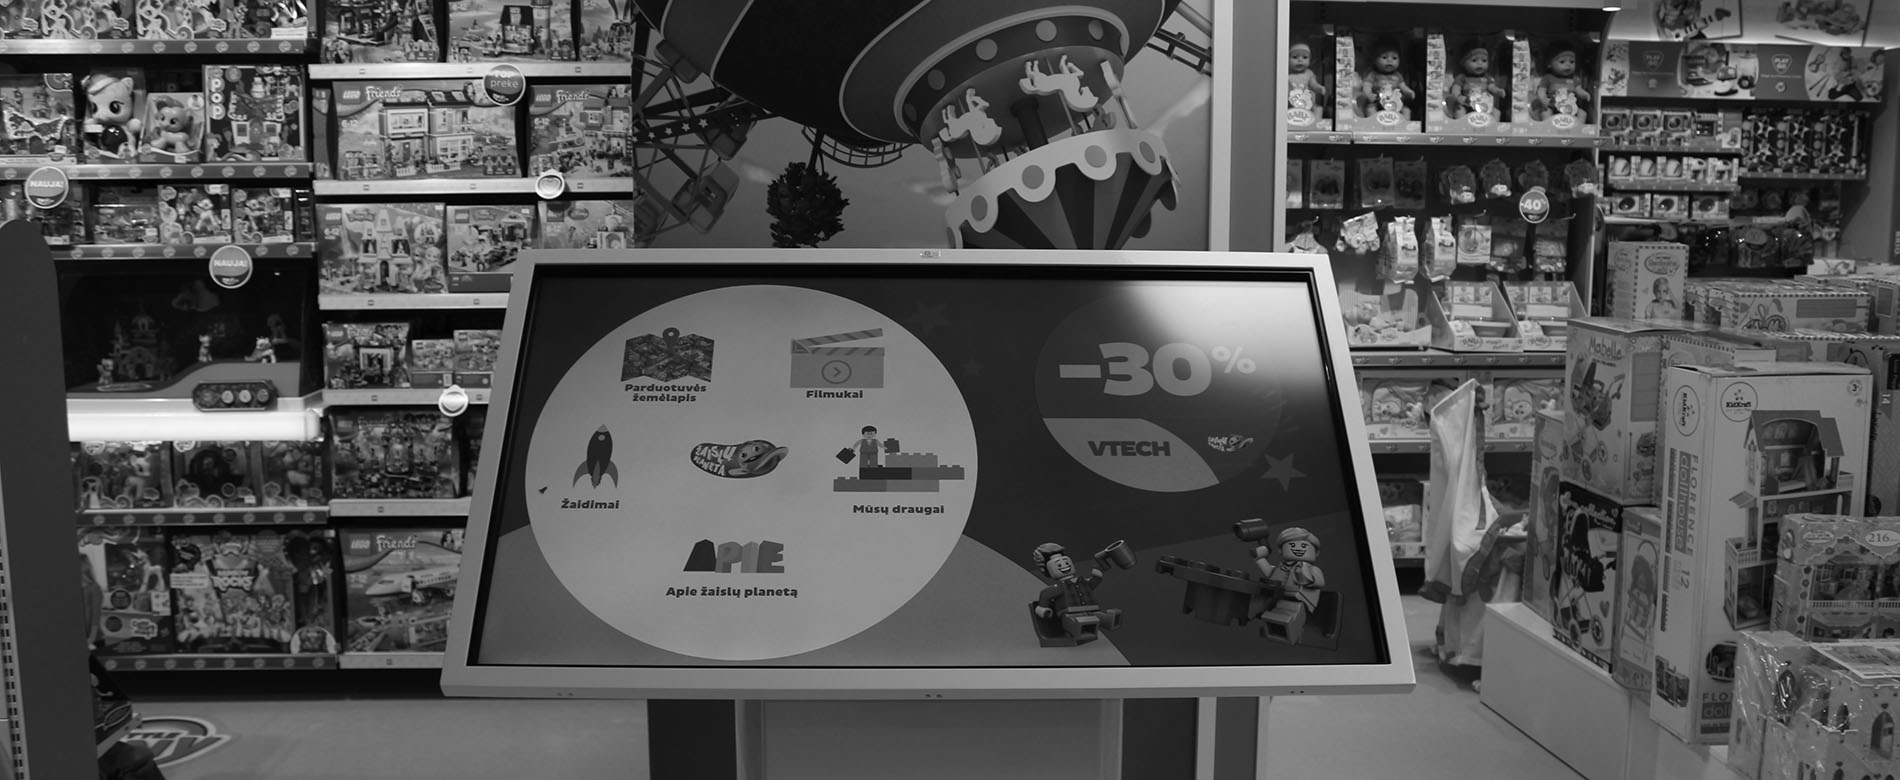 Įspūdingas interaktyvus stalas vaikams "Žaislų Planeta" parduotuvėje